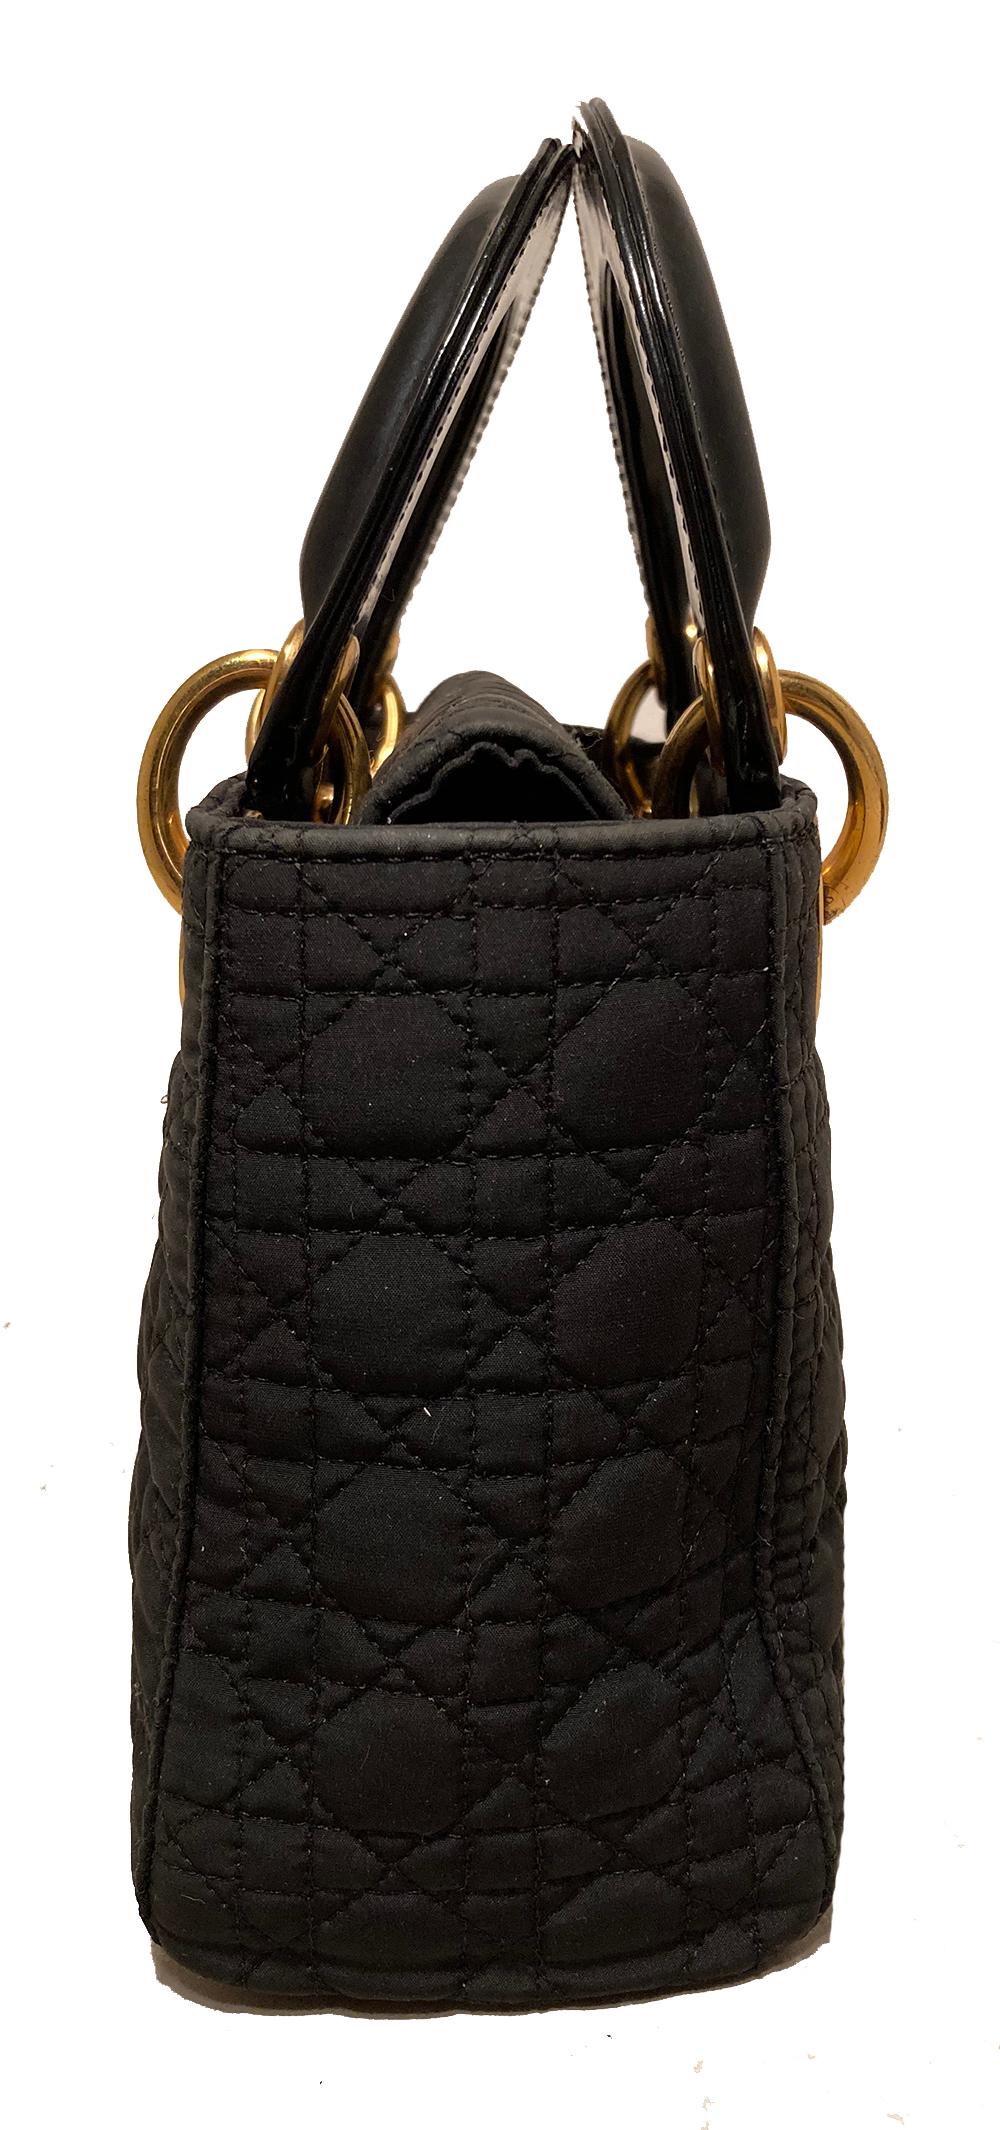 Dior Vintage Mini Lady Dior Black Nylon Cannage Quilted Bag in sehr gutem Zustand. Schwarzer, gesteppter Nylonkorpus mit goldenen Beschlägen und schwarzen Ledergriffen. Der Druckknopfverschluss an der Oberseite öffnet sich zu einem Innenraum aus